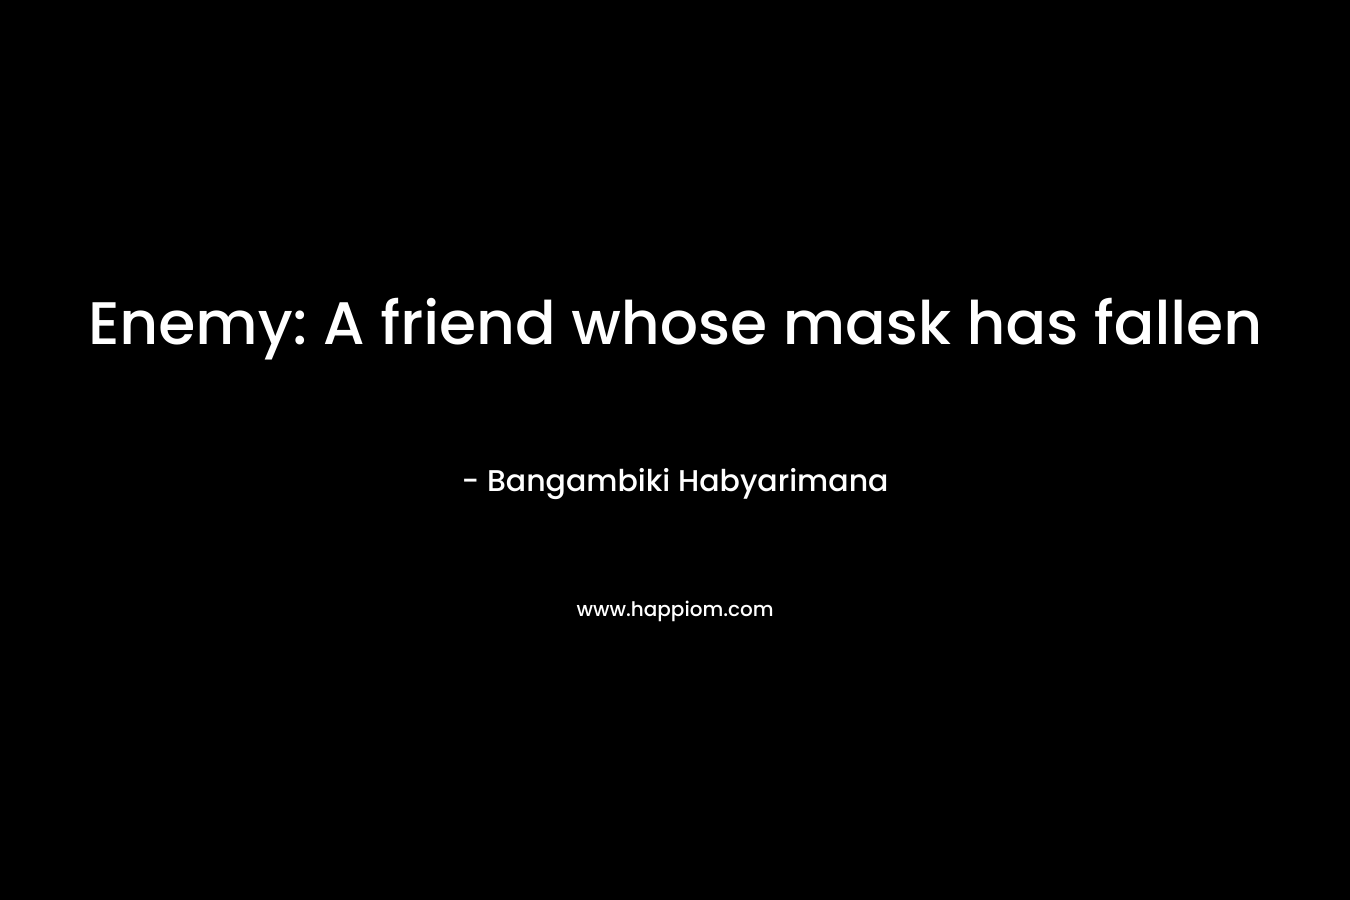 Enemy: A friend whose mask has fallen